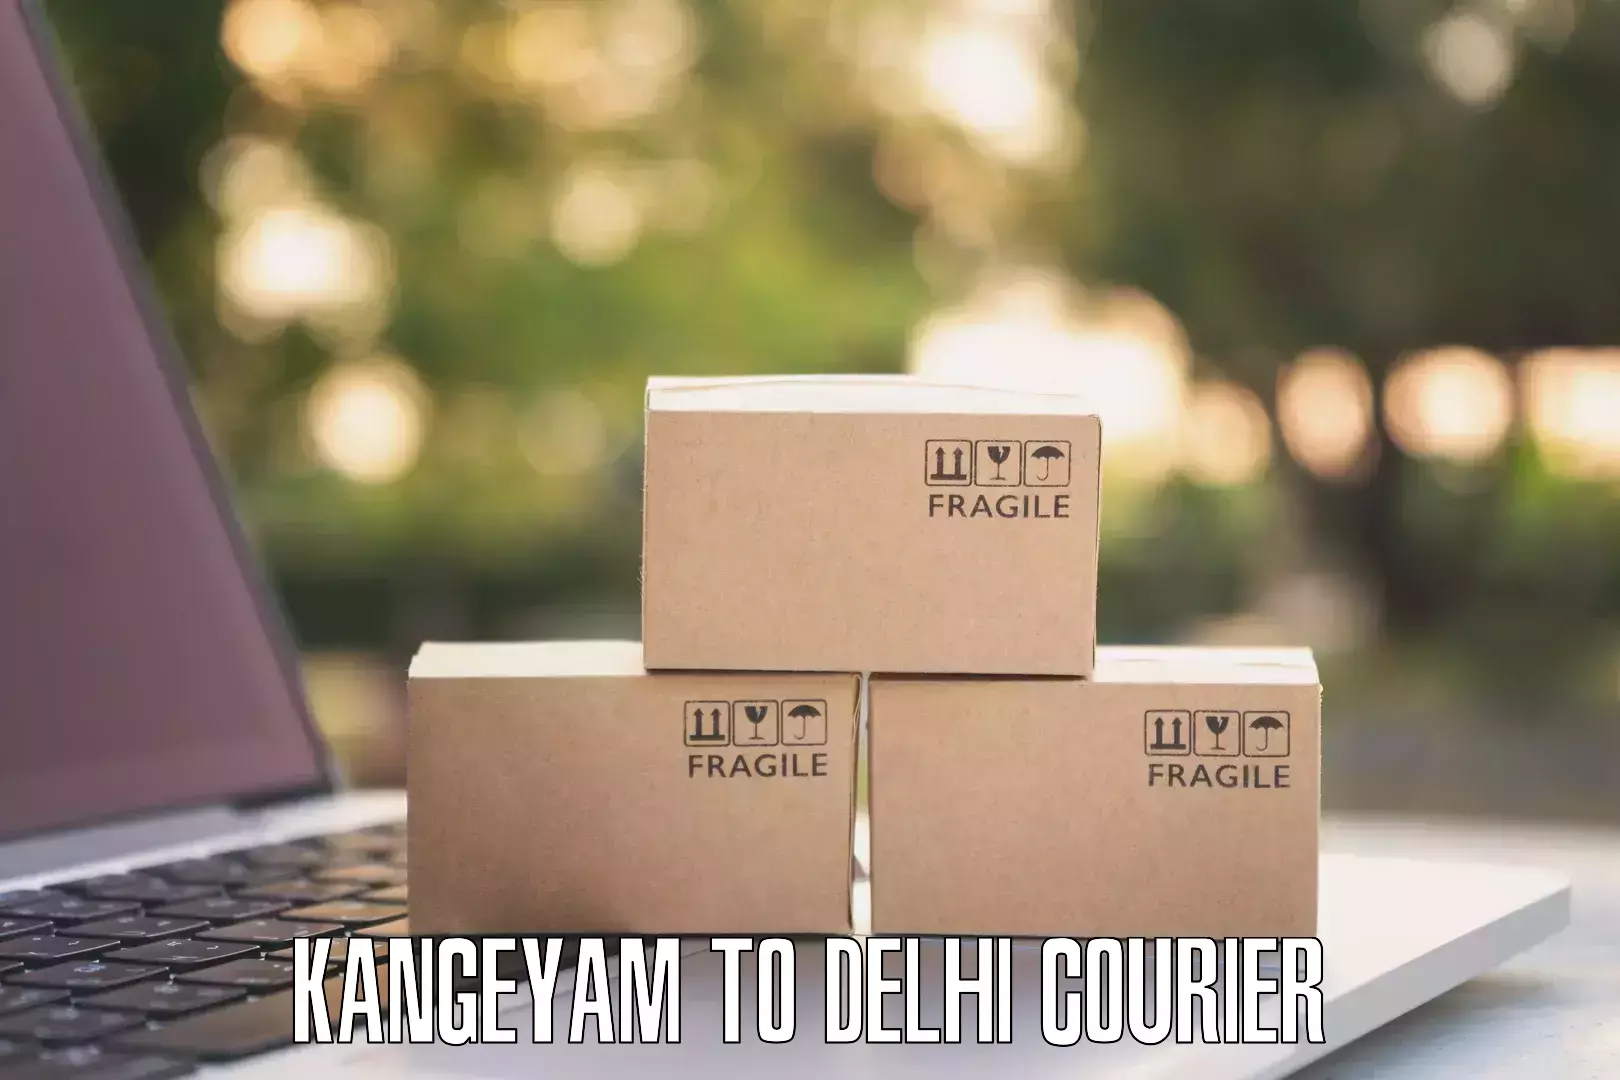 Next-day delivery options Kangeyam to Burari